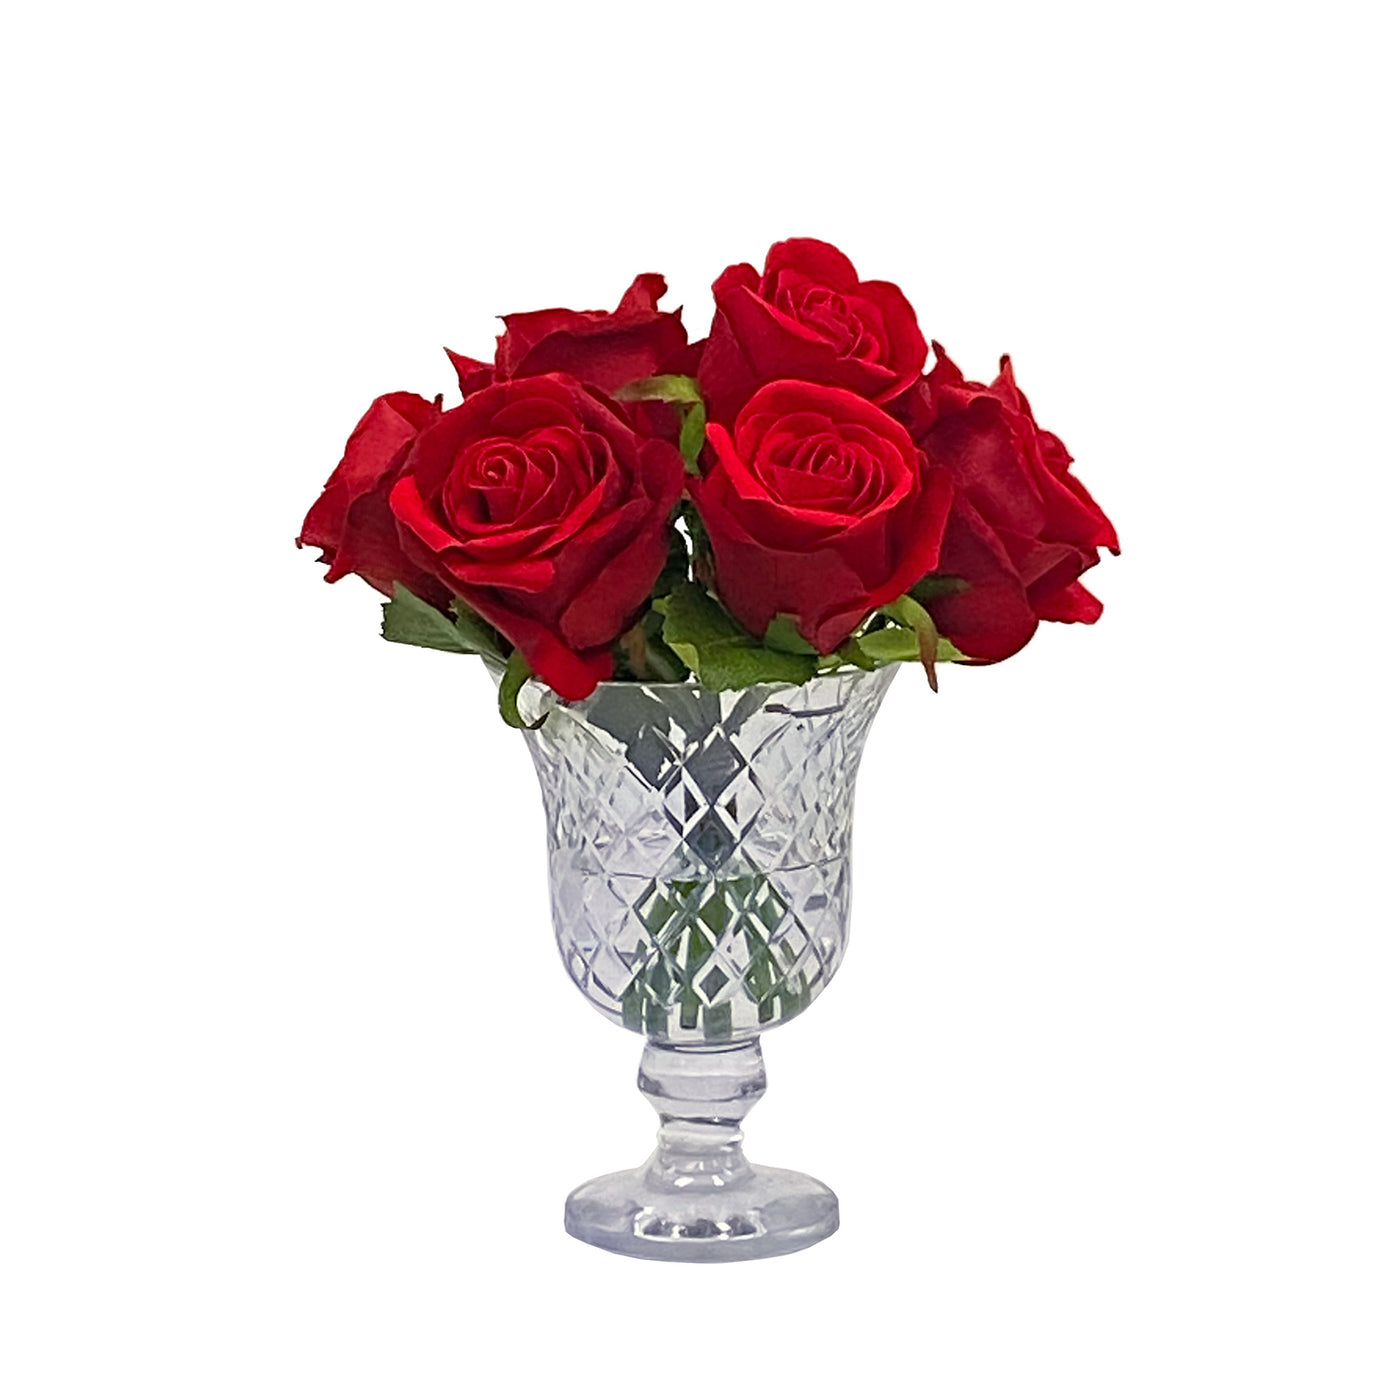 Red Roses in Candleholder Vase 11"